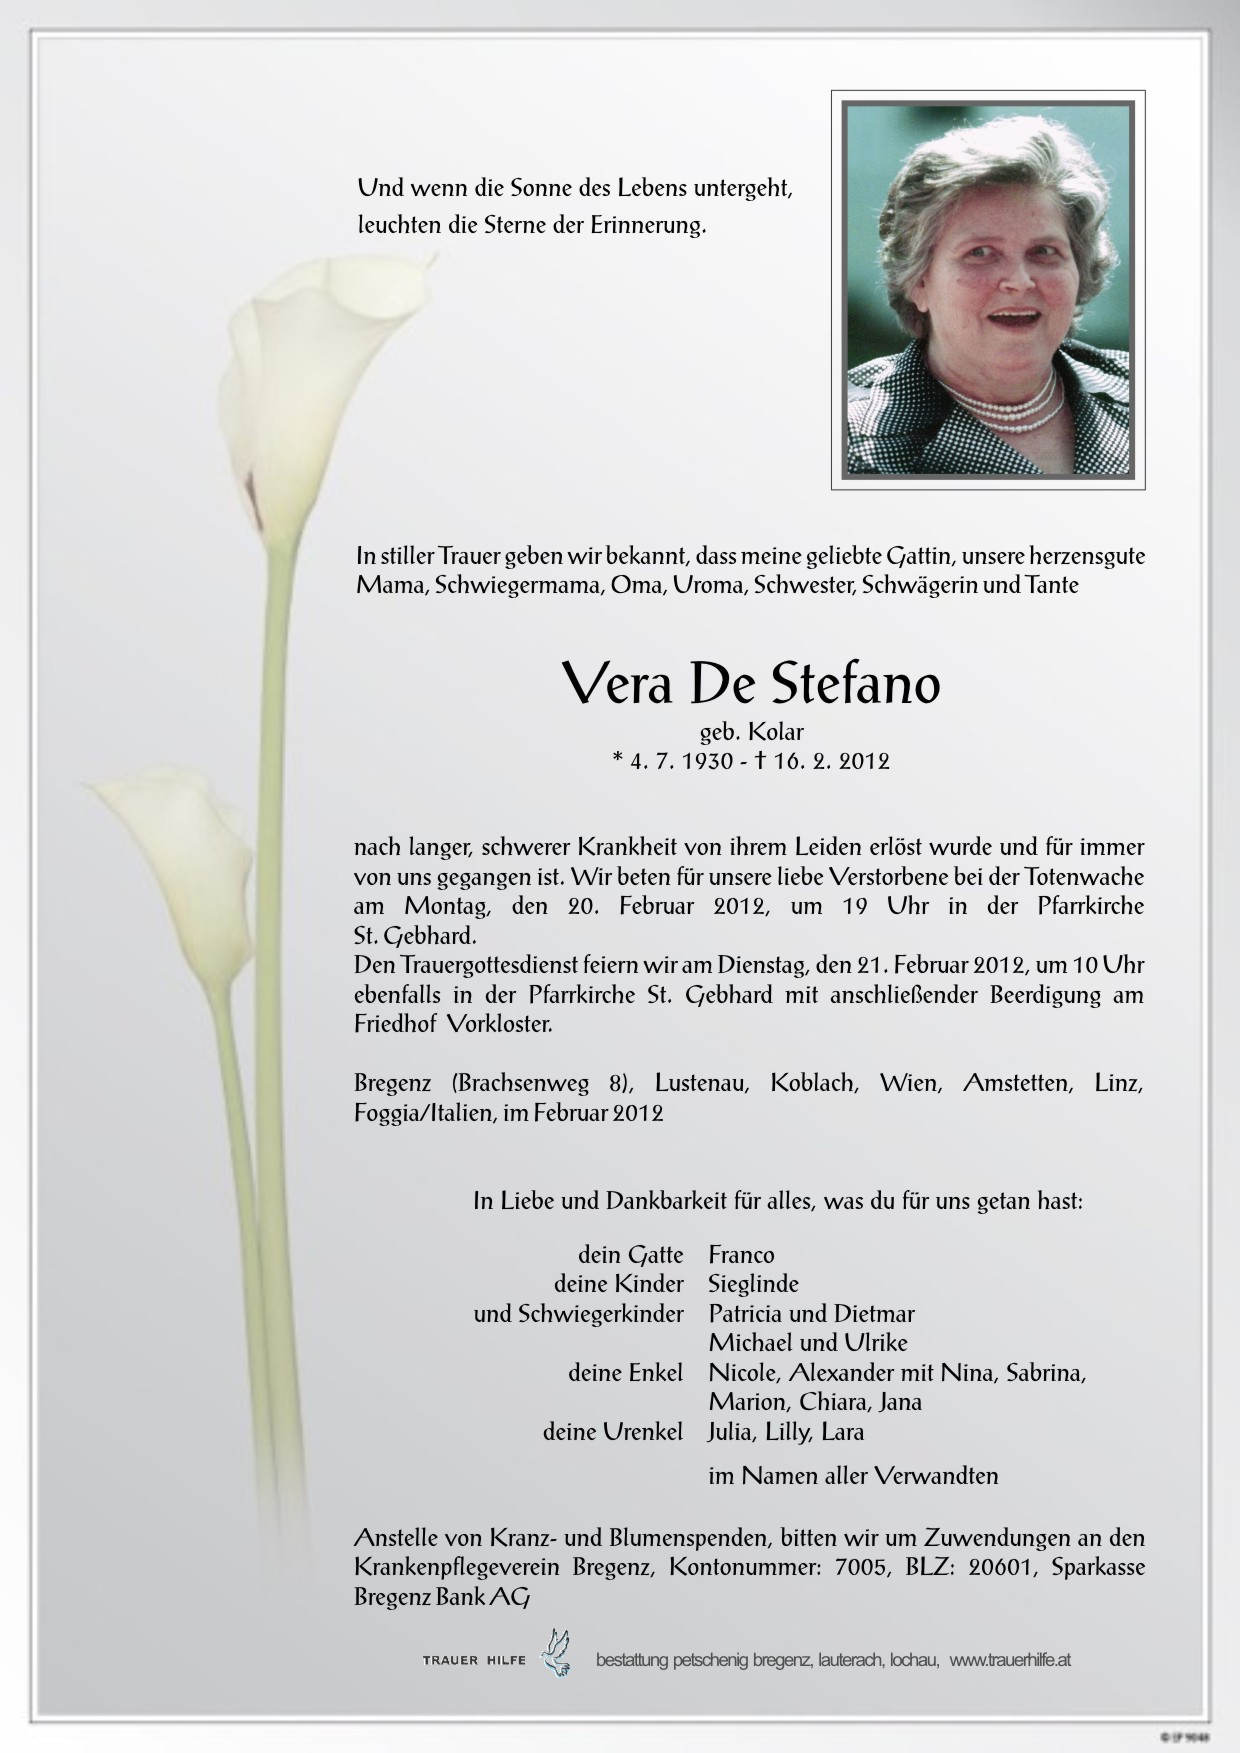 Vera De Stefano